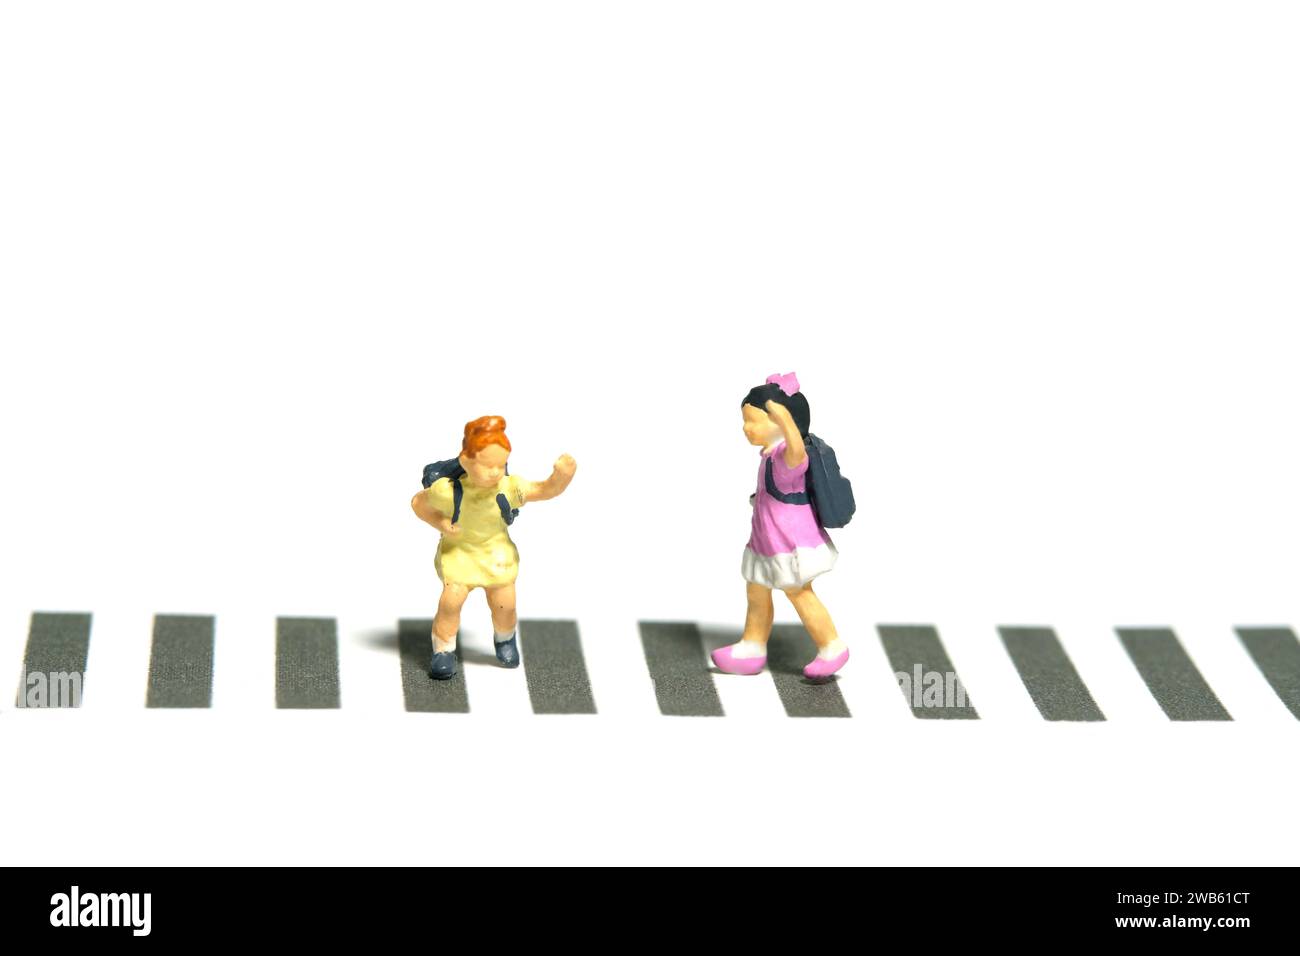 Fotografia in miniatura di giocattoli per persone piccole. Due studenti dell'asilo che camminano sopra l'attraversamento della zebra. Isolato su sfondo bianco. Foto immagine Foto Stock